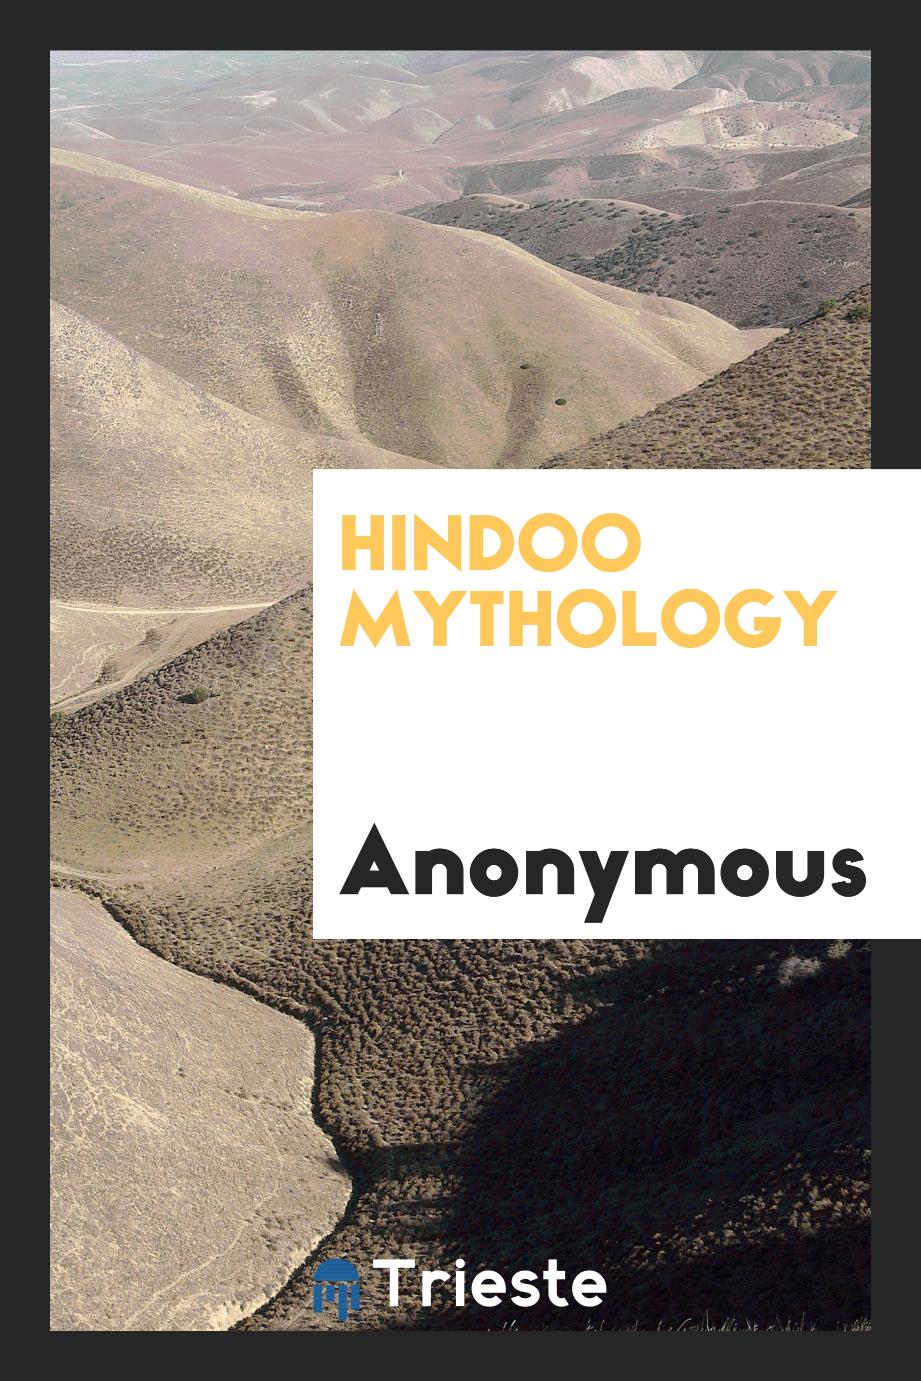 Hindoo mythology